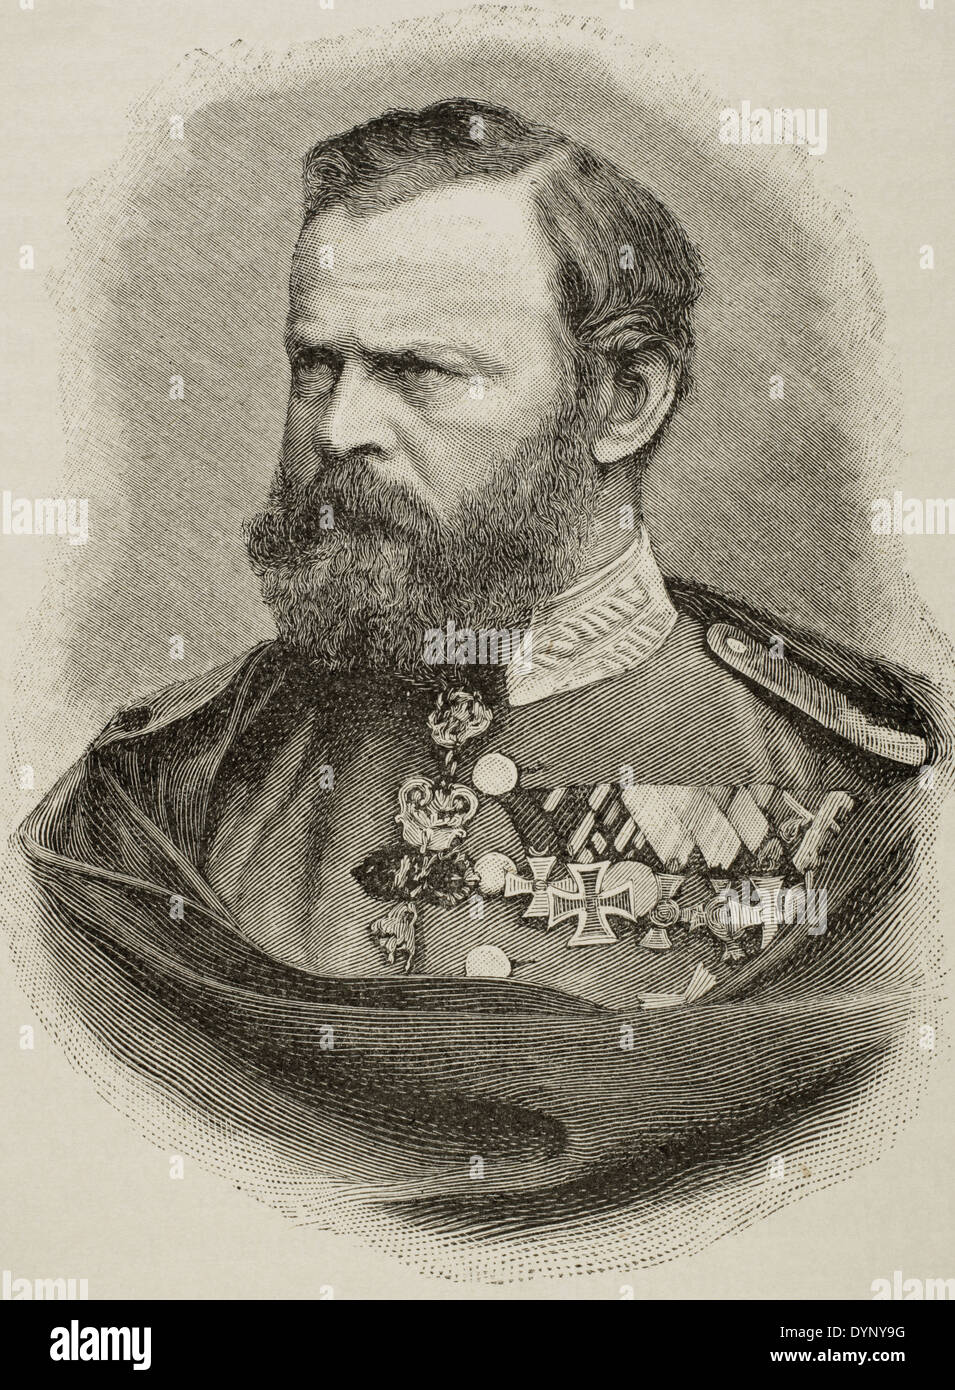 Prinz Luitpold von Bayern (1821-1912). Prince Regent und de-facto-König von Bayern. Gravur. Universalgeschichte, 1885. Stockfoto